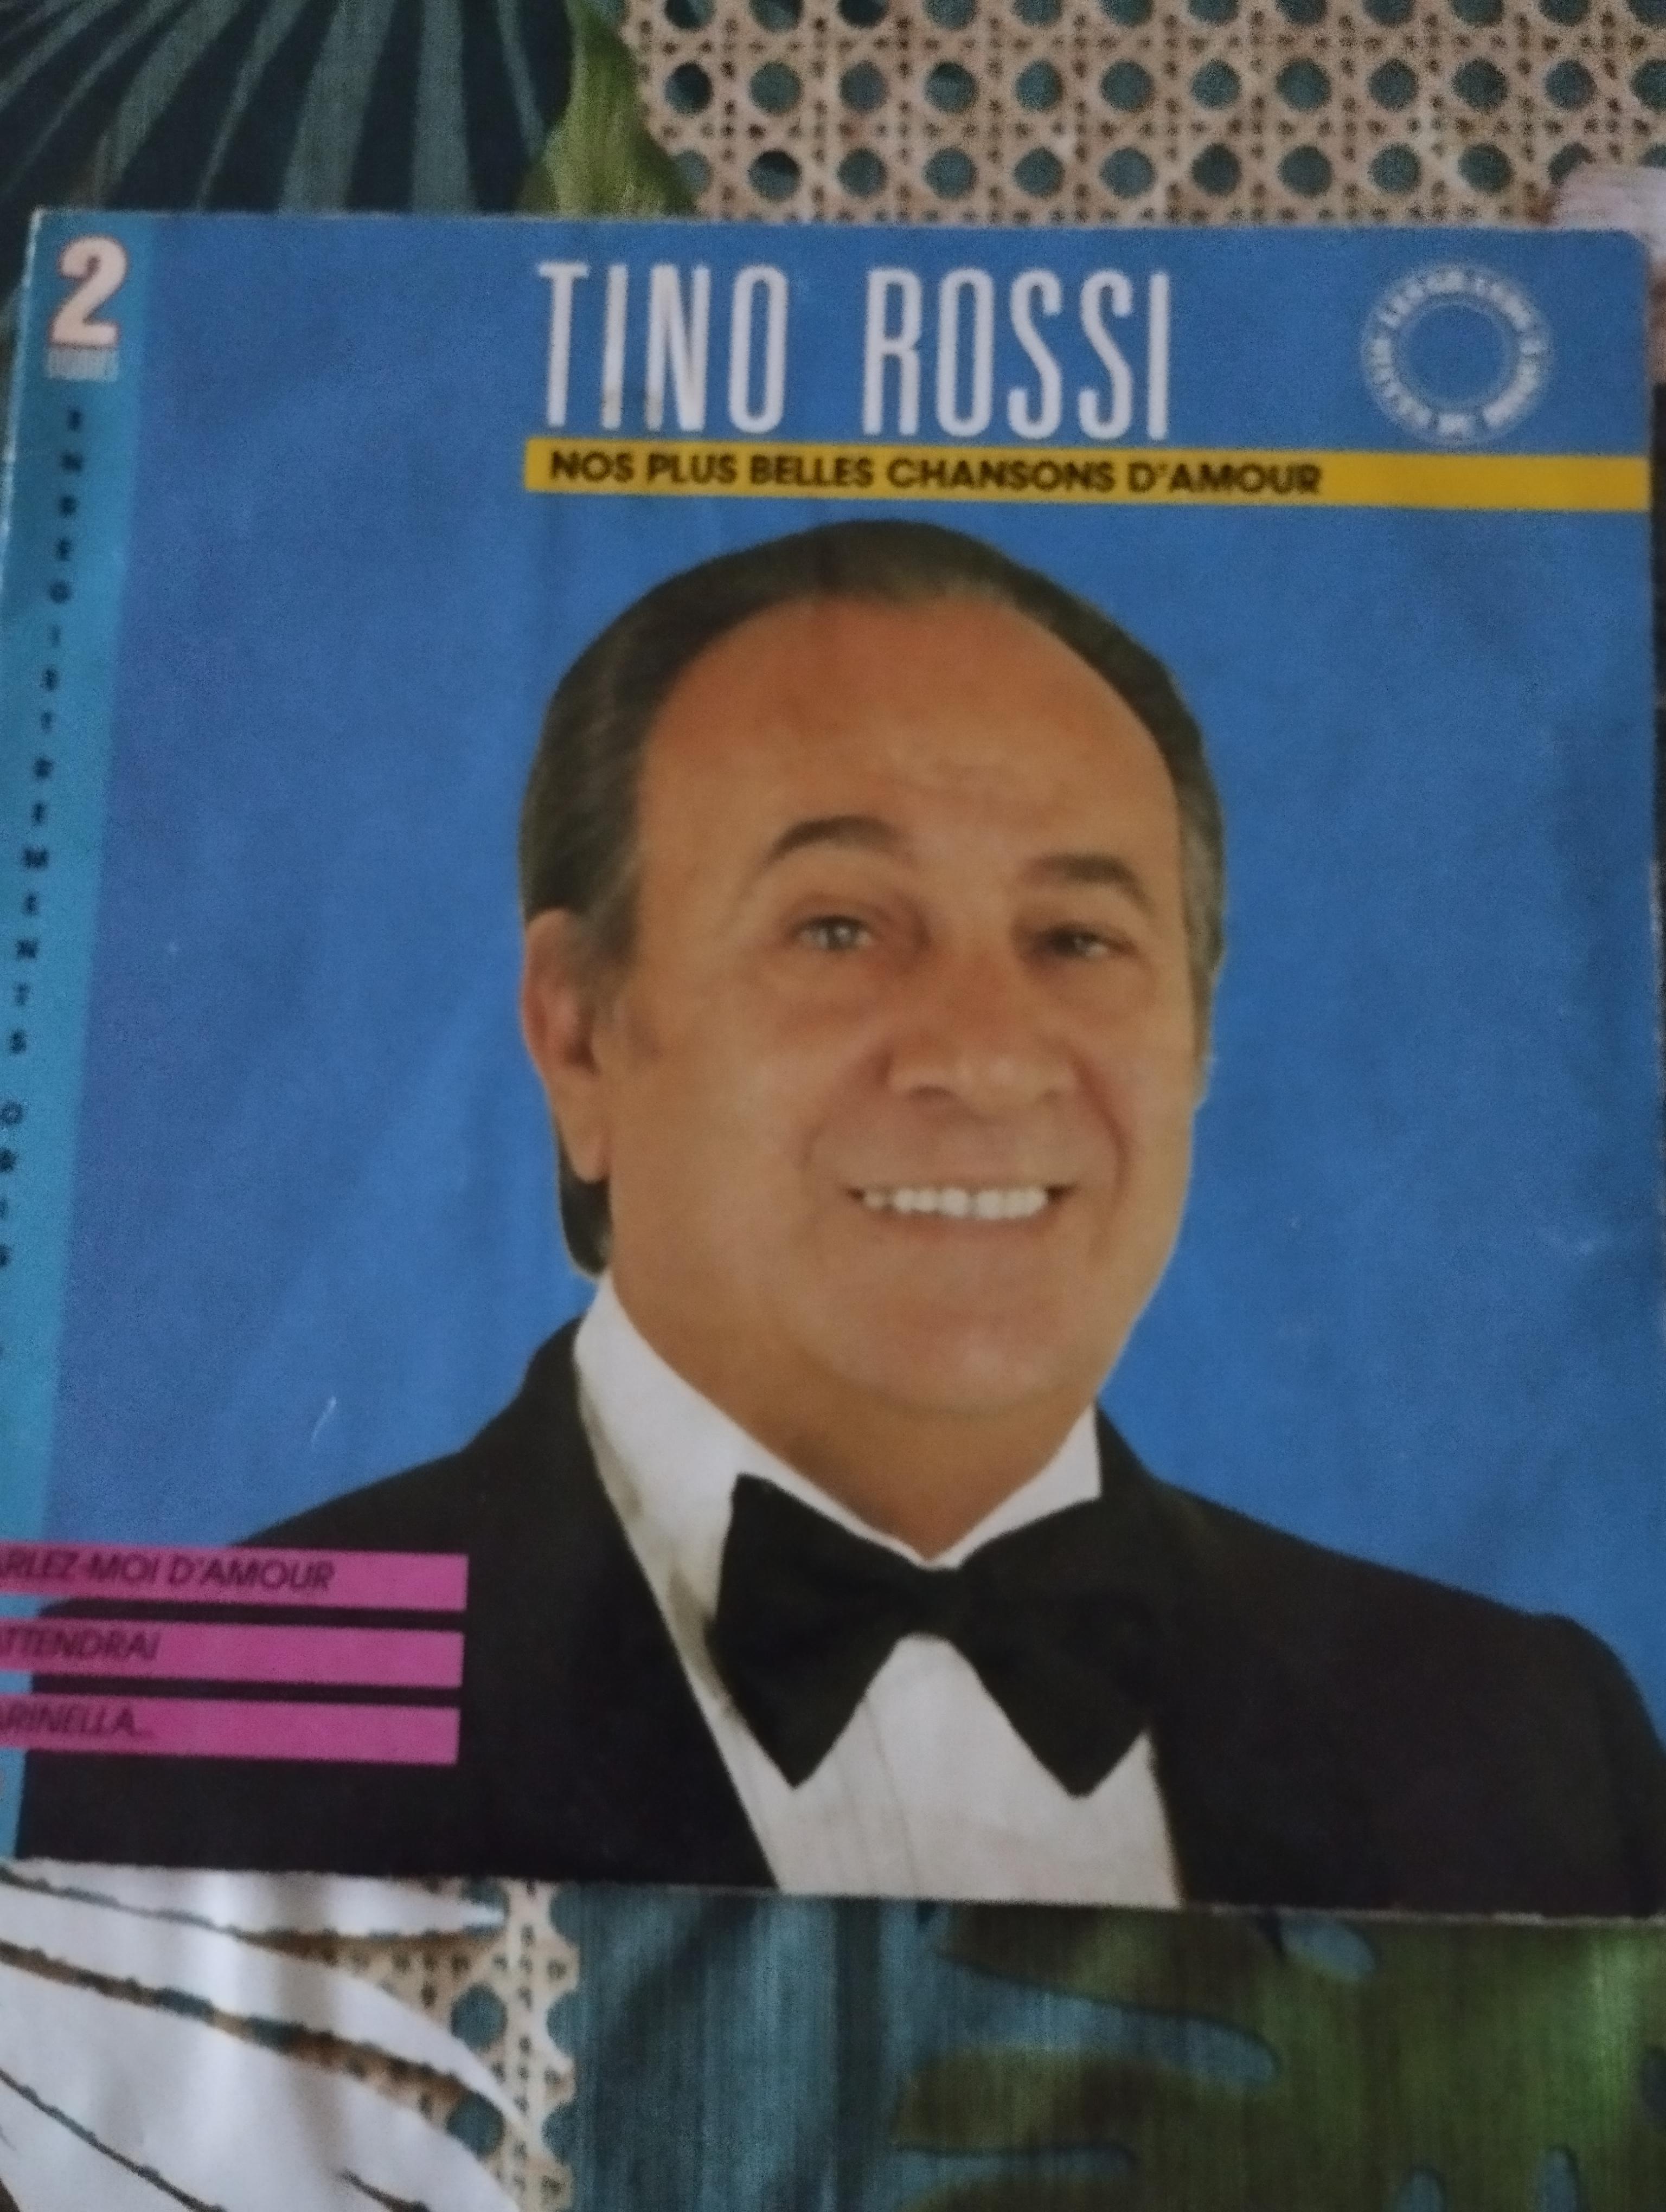 troc de troc disque vinyle 33t tino rossi - nos plus belles chansons d'amour image 0